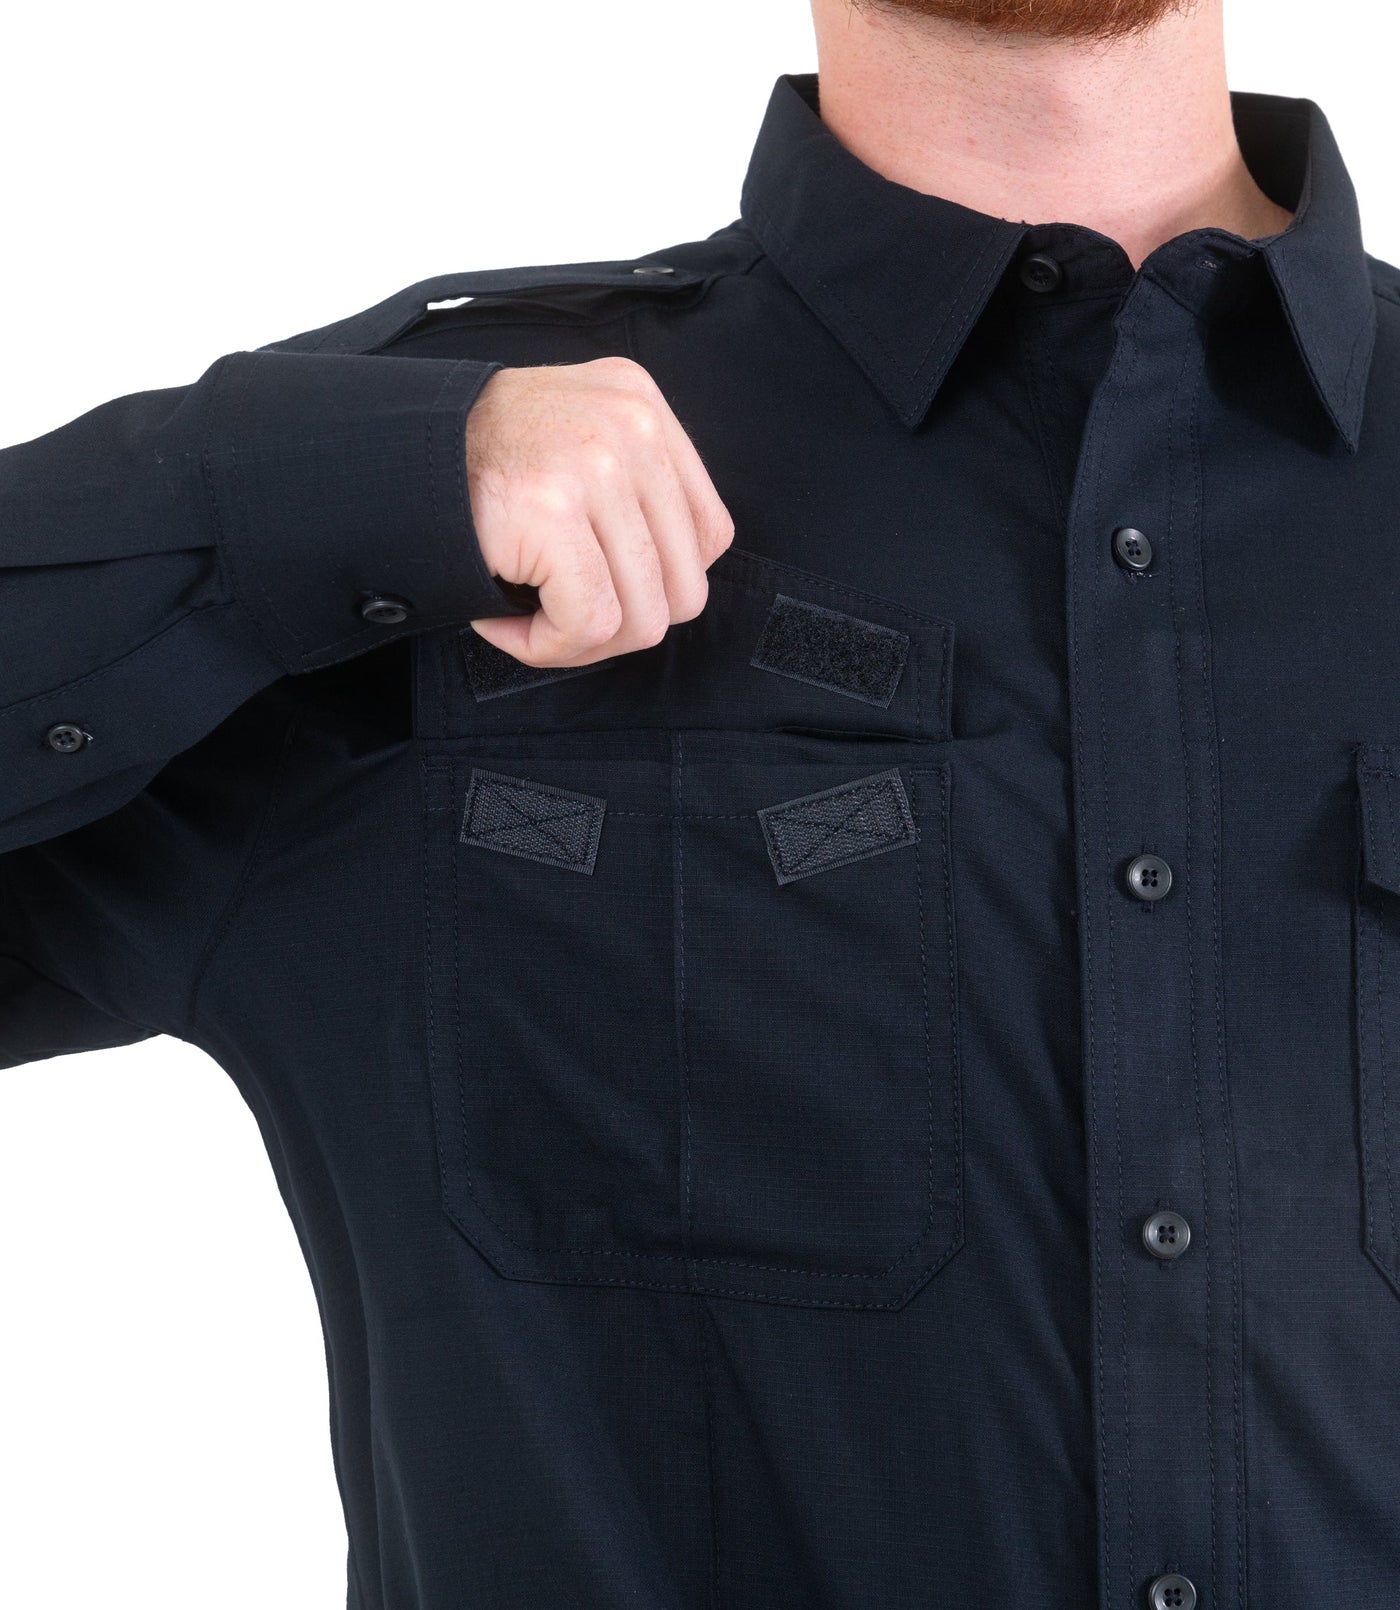 Pocket of Men's Pro Duty Uniform Shirt in Midnight Navy